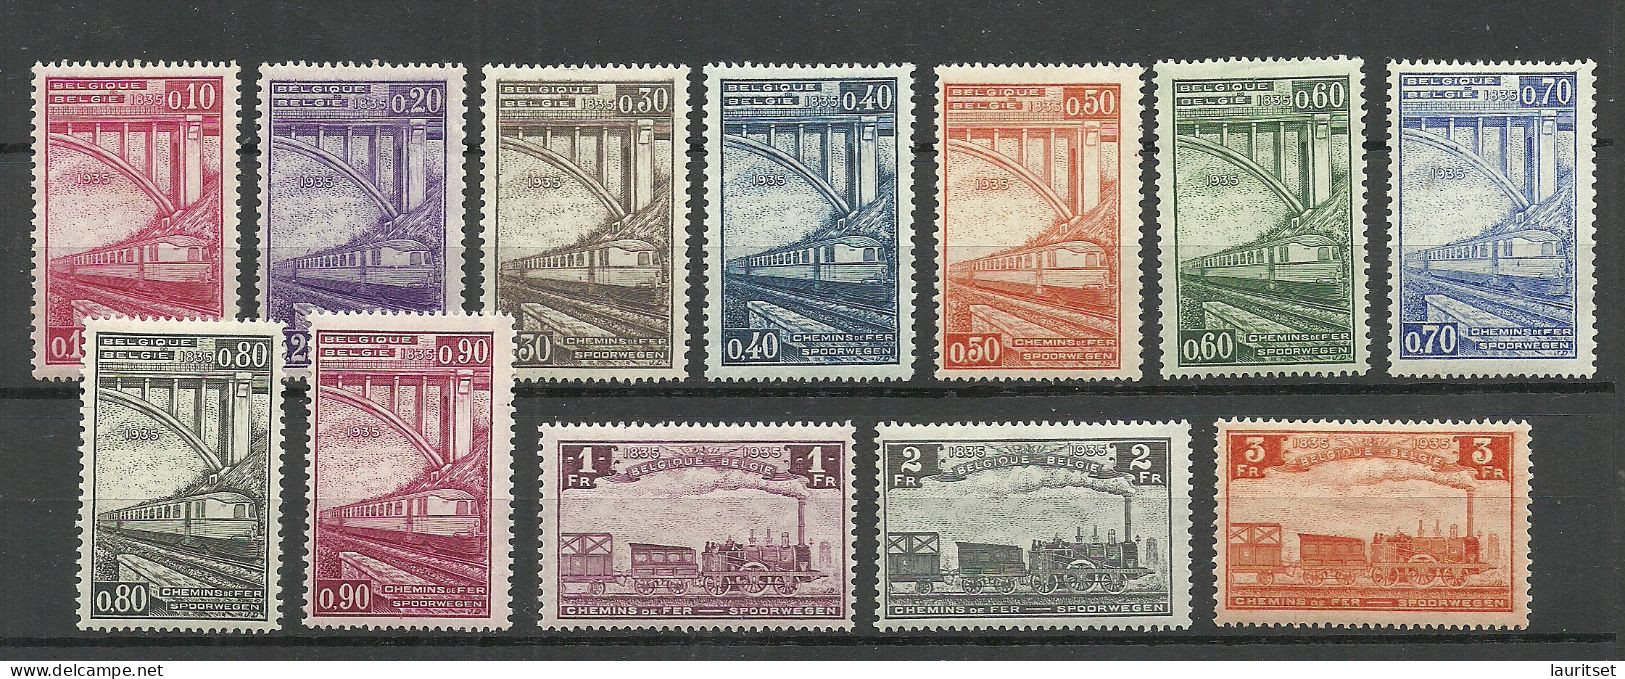 BELGIEN Belgium Belgique 1935 Michel 171 - 182 Eisenbahnpaketmarken Railway Packet Stamps * - Mint